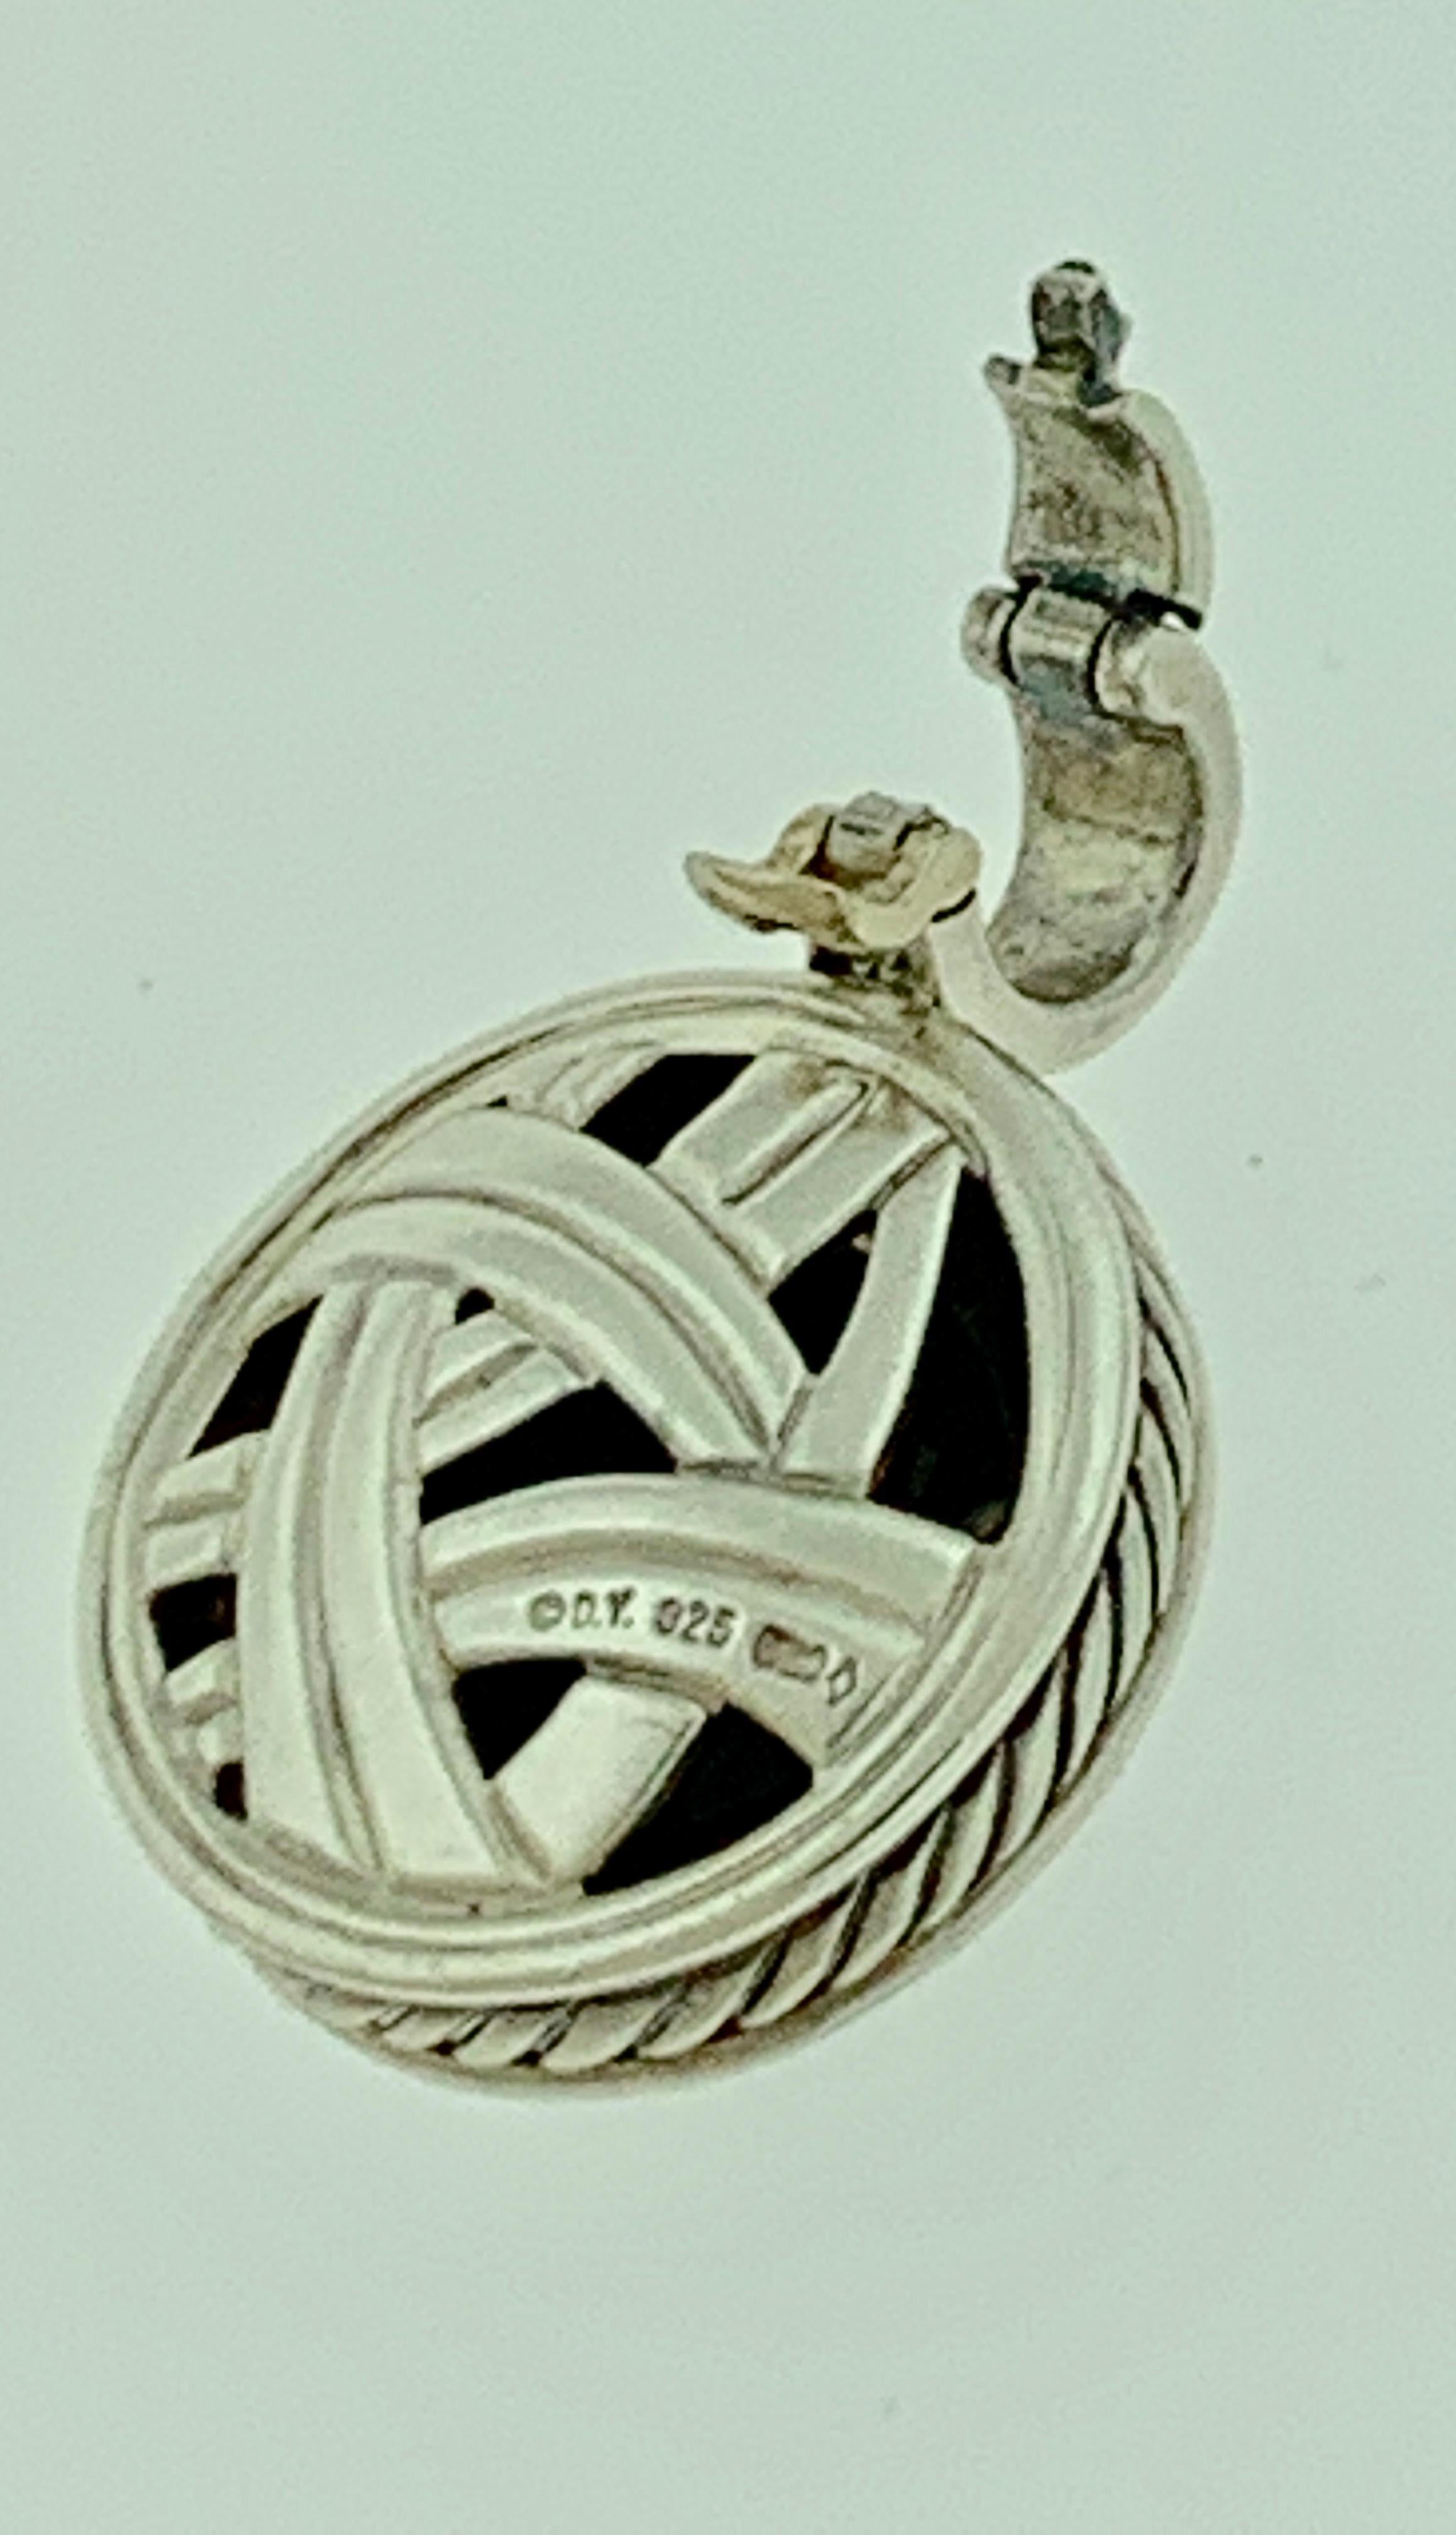 david yurman black onyx pendant